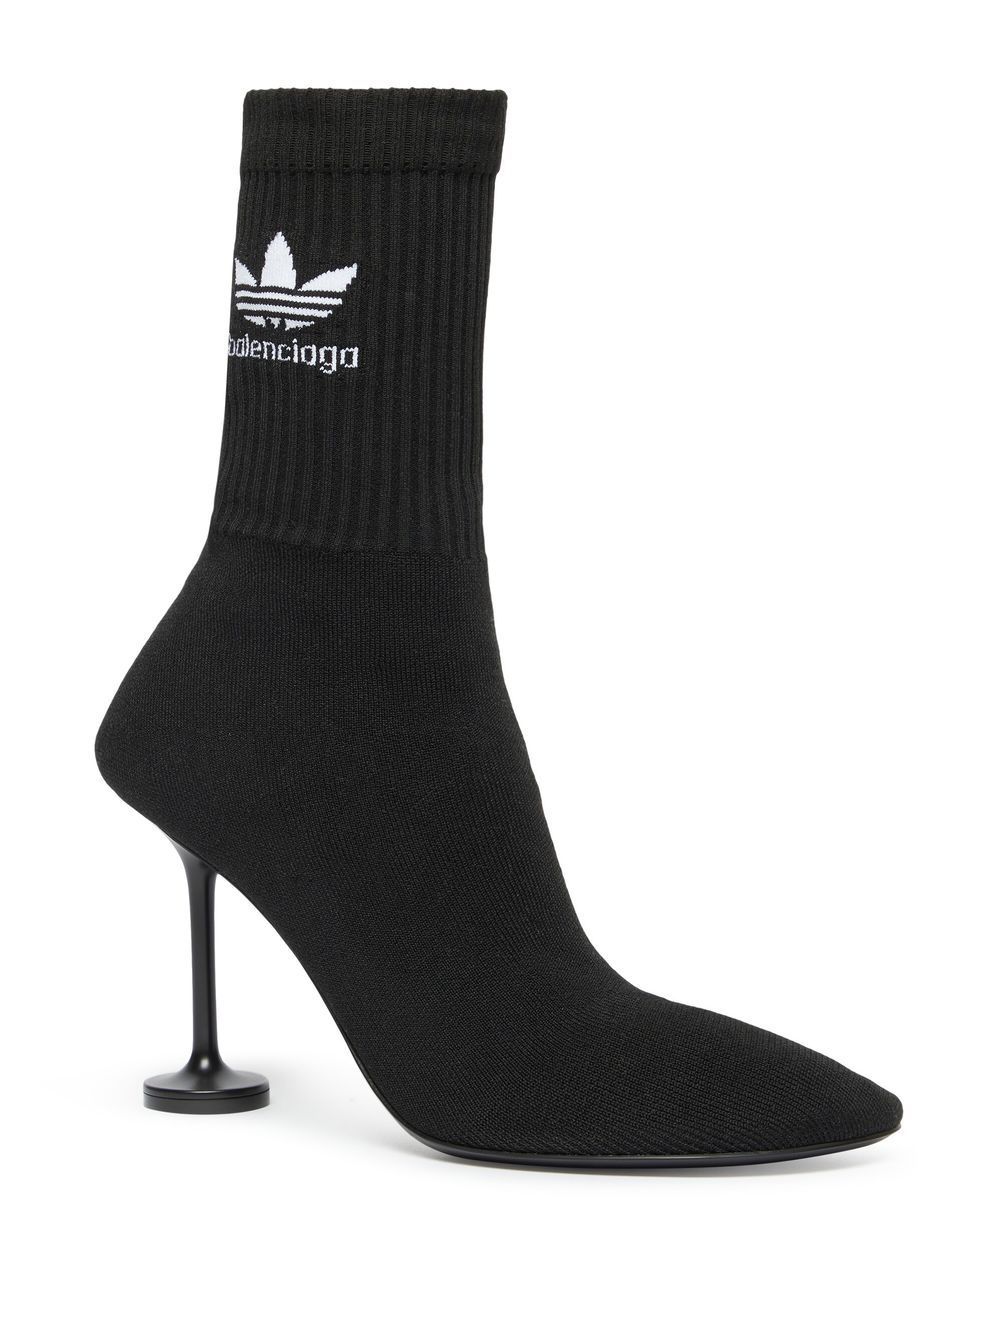 Balenciaga x Adidas Sock 90mm Knitted Boots - Farfetch